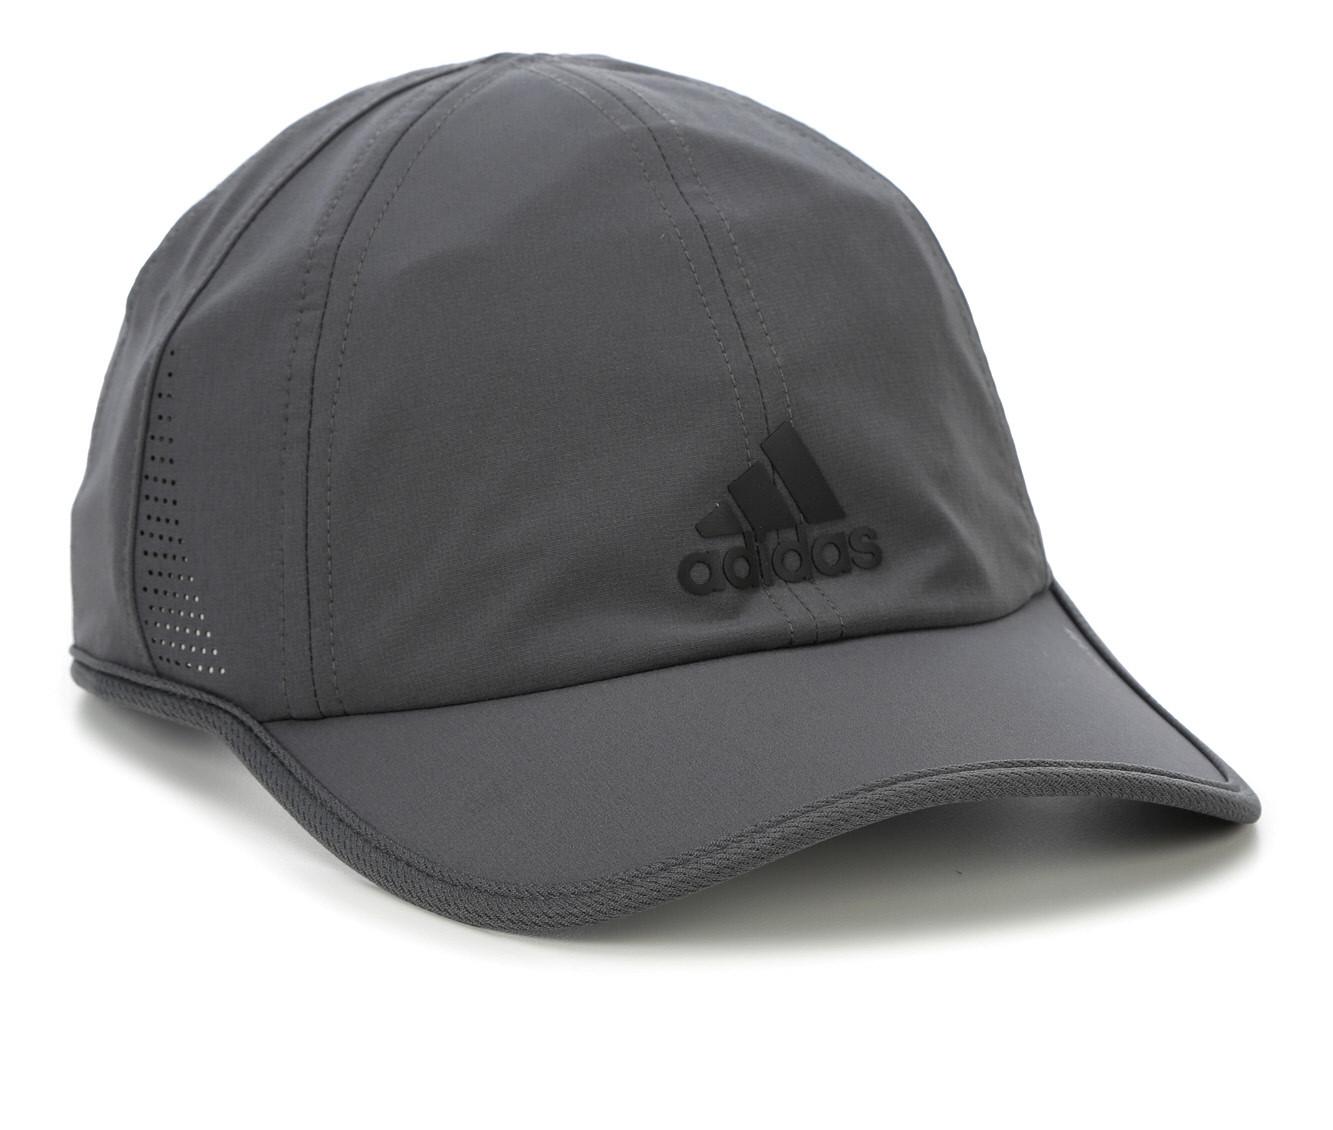 Adidas Men's Superlite II Cap